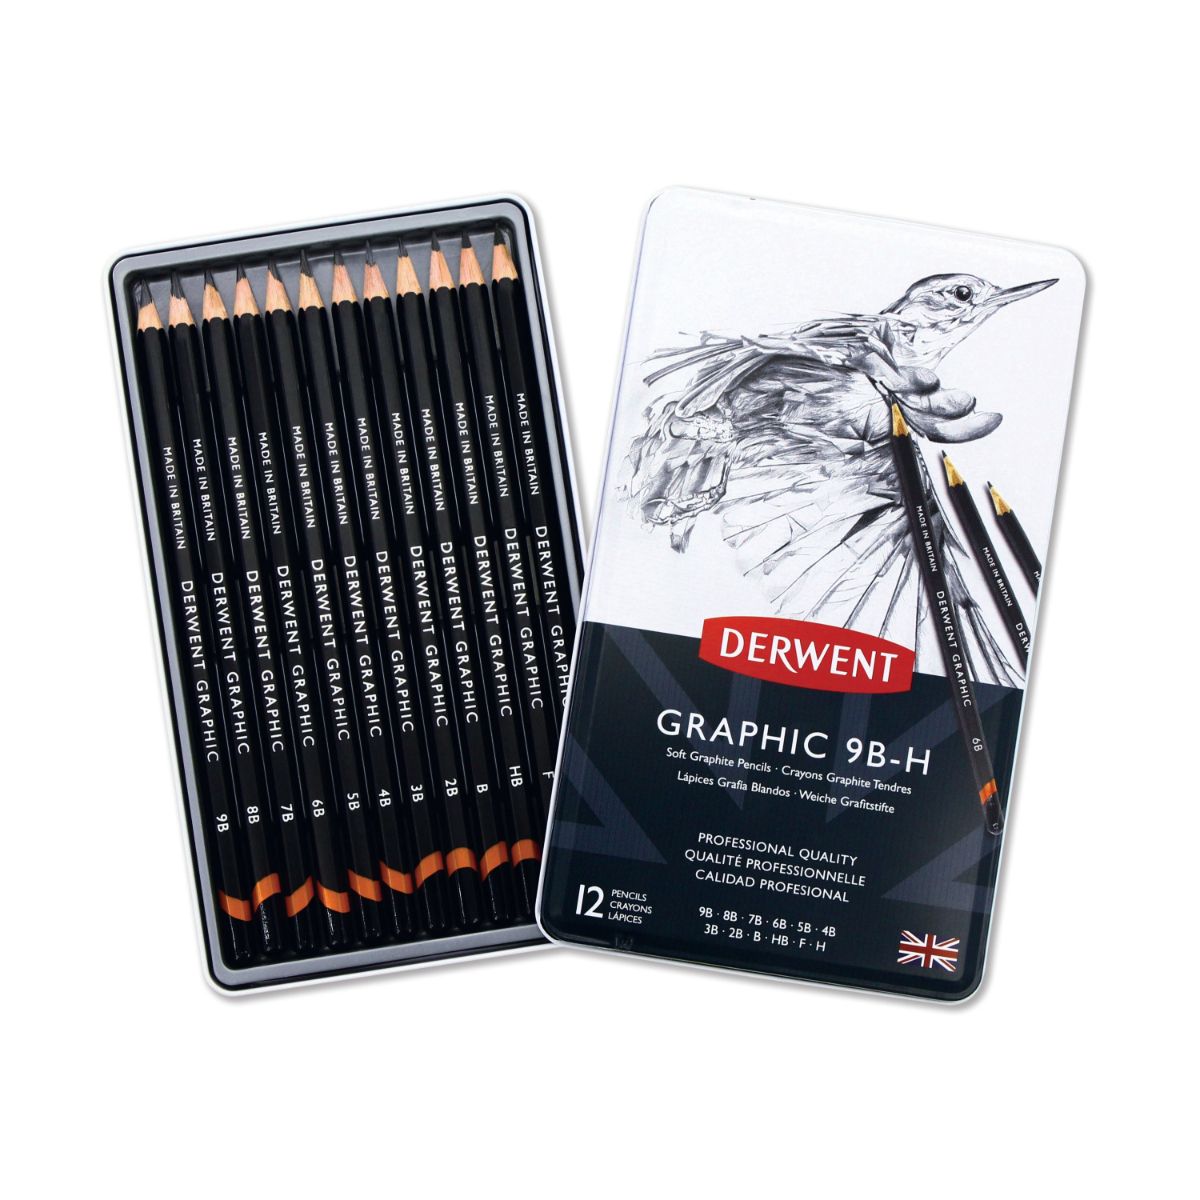 ダーウェント グラフィック ソフト スケッチング 12種セット 9B-H メタルケース 文具 高級色鉛筆 製図・デッサン向け イギリス製